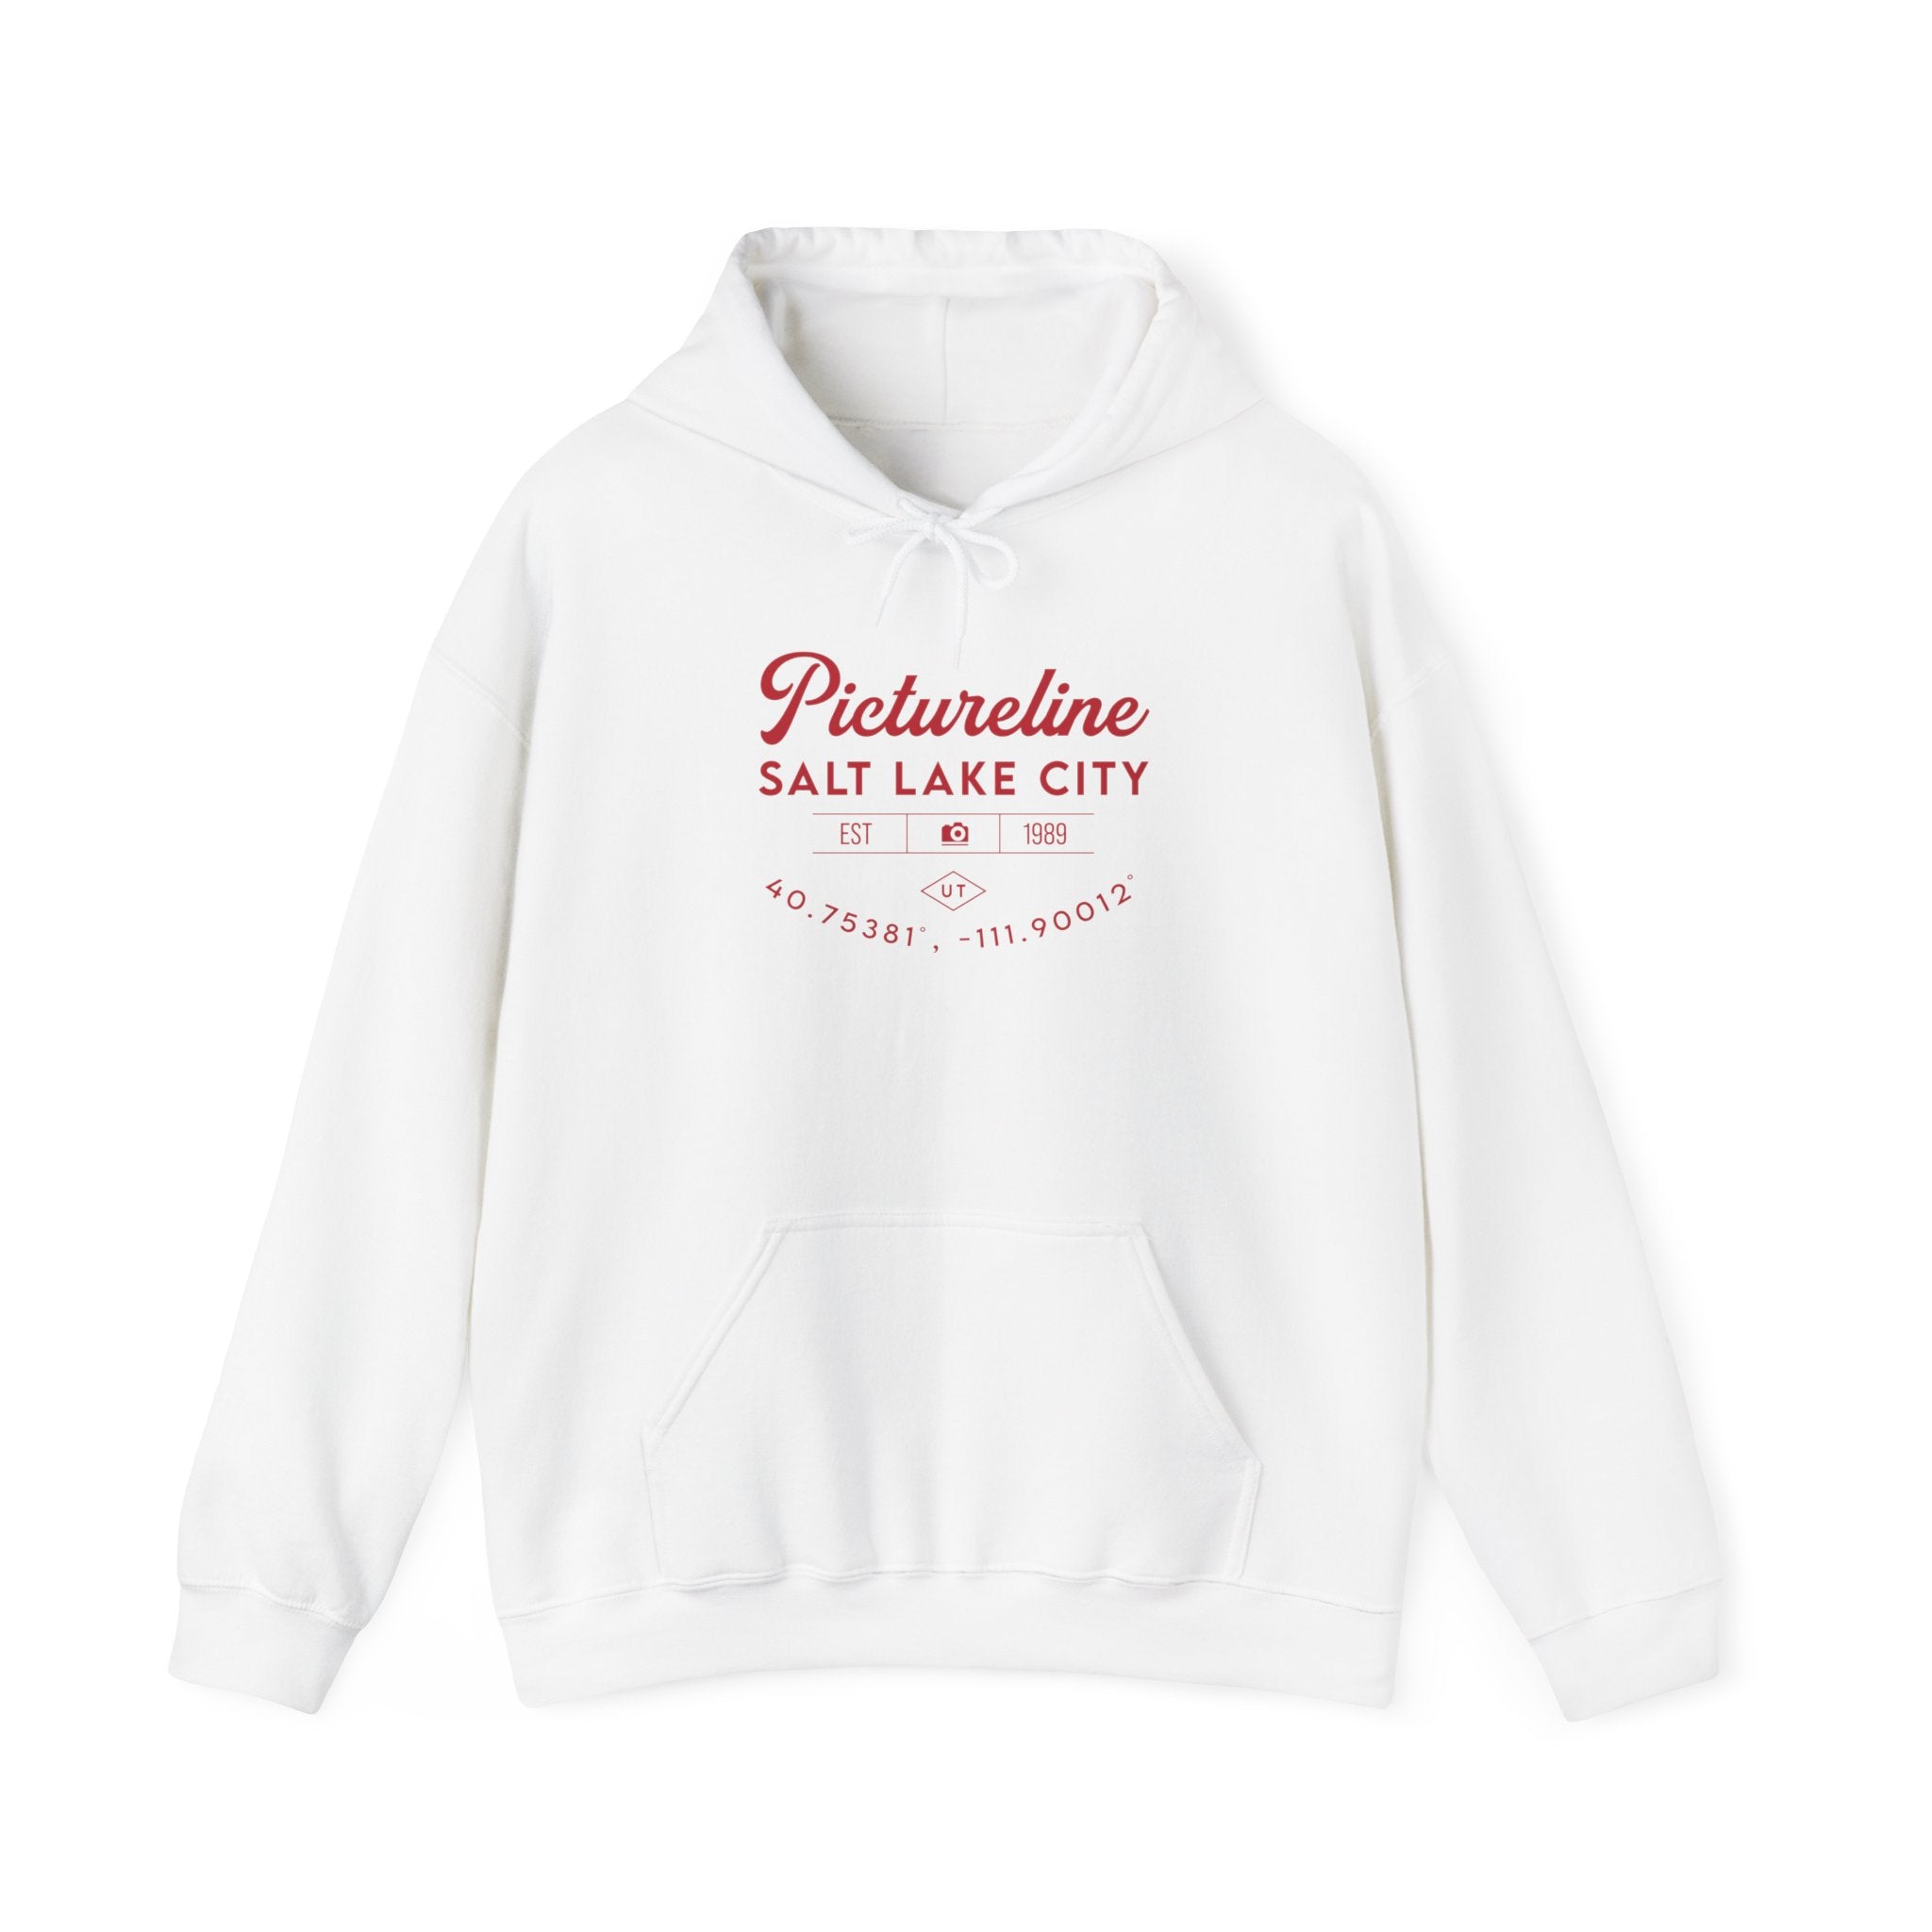 Old School Pictureline Unisex Hooded Sweatshirt (Front Design)